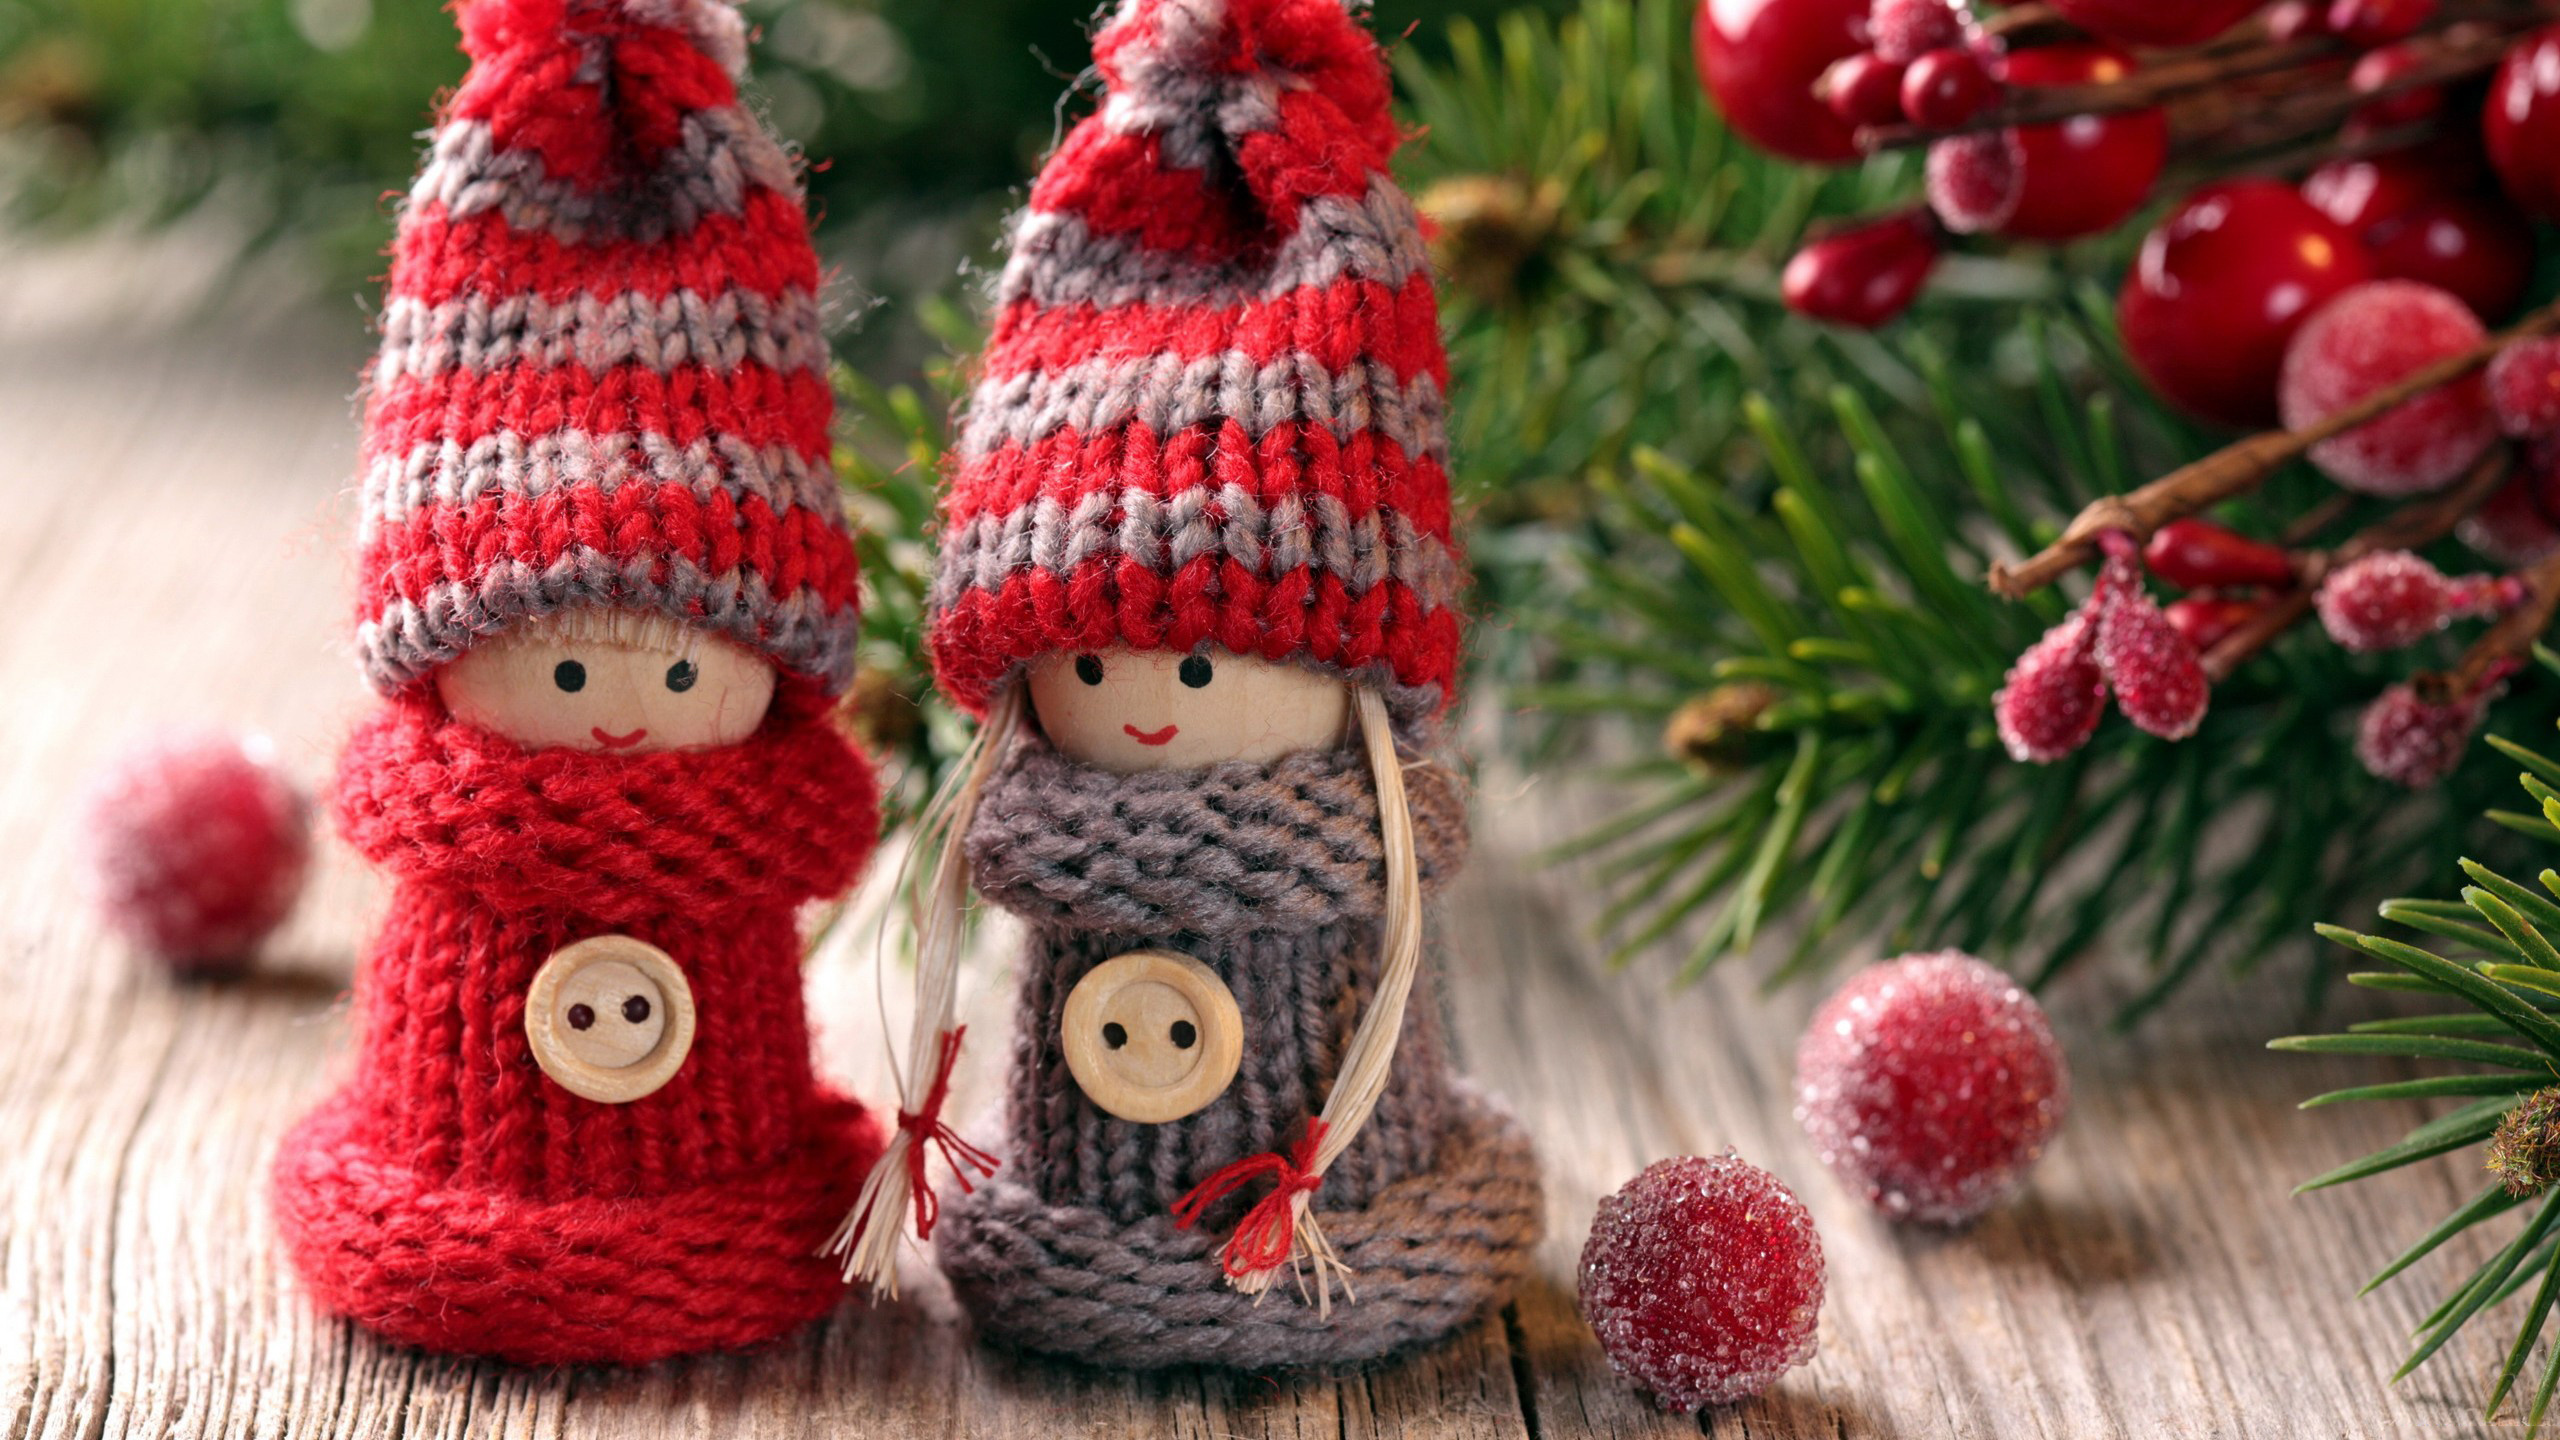 Le Jour De Noël, Crochet, Décoration de Noël, Ornement de Noël, Arbre de Noël. Wallpaper in 2560x1440 Resolution